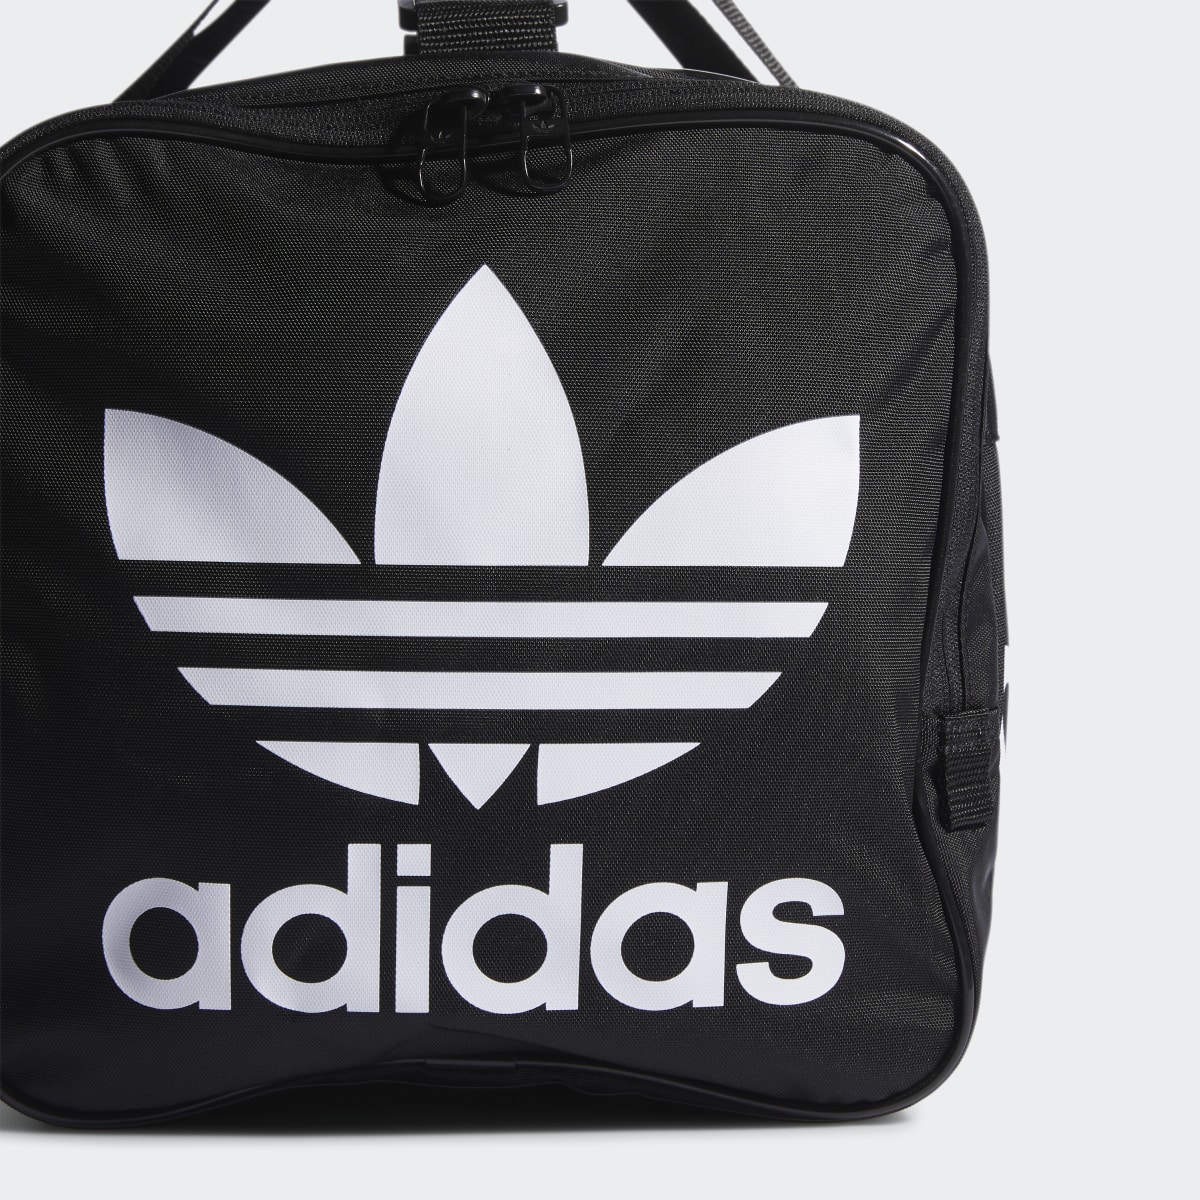 Adidas Santiago Duffel Bag. 6